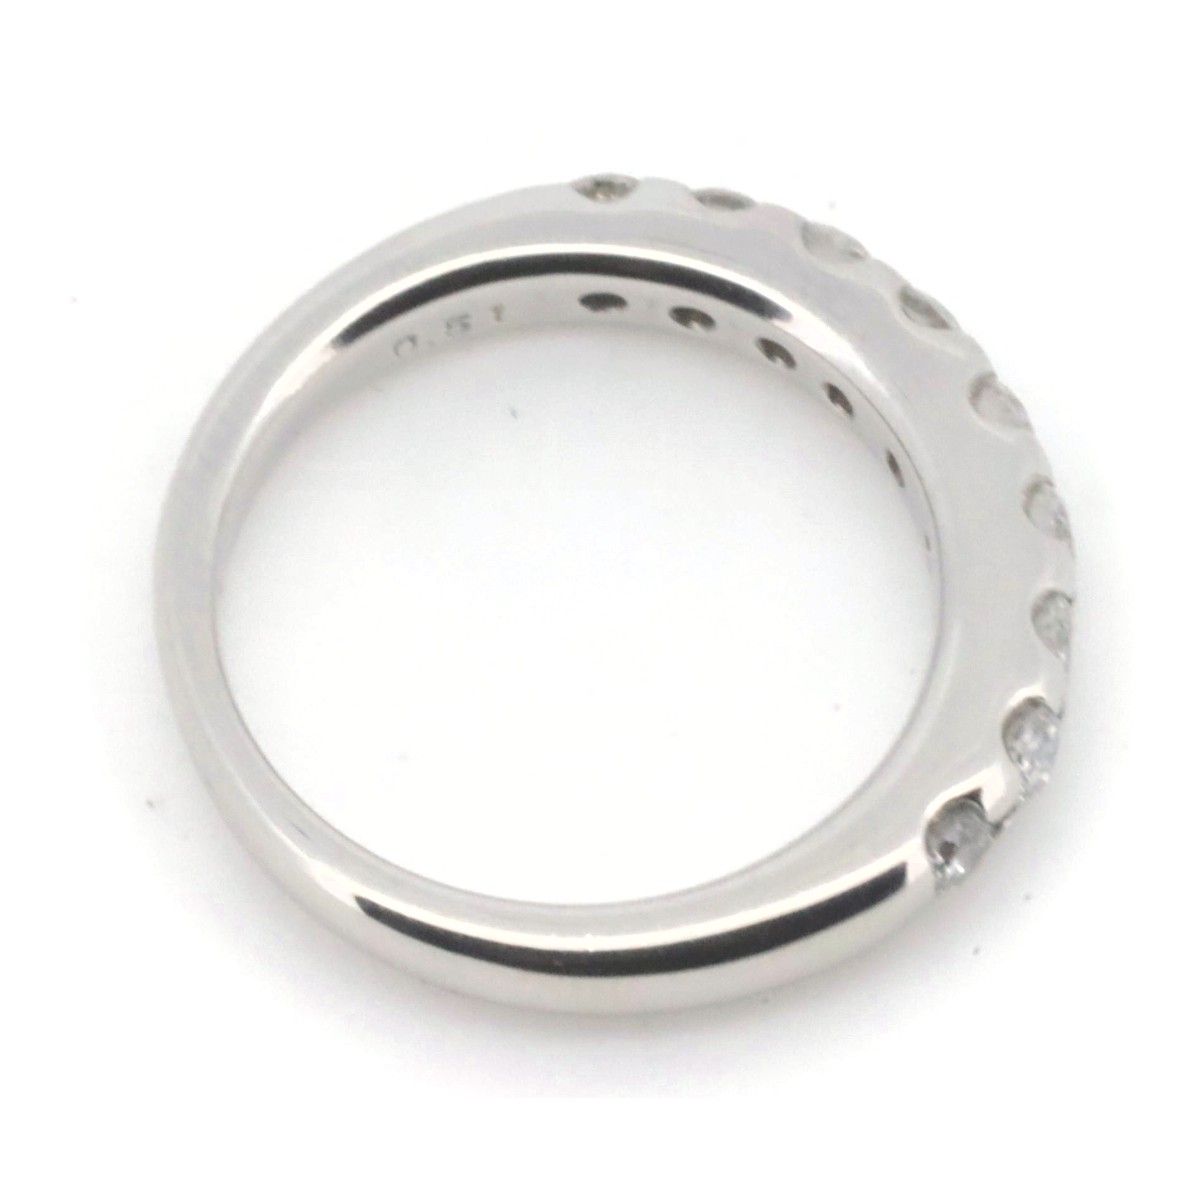 安い高評価PT900 リング 指輪 9.5号 ダイヤ 0.457 VVS2 ダイヤ 0.05 鑑定書 総重量約3.6g☆0315 プラチナ台